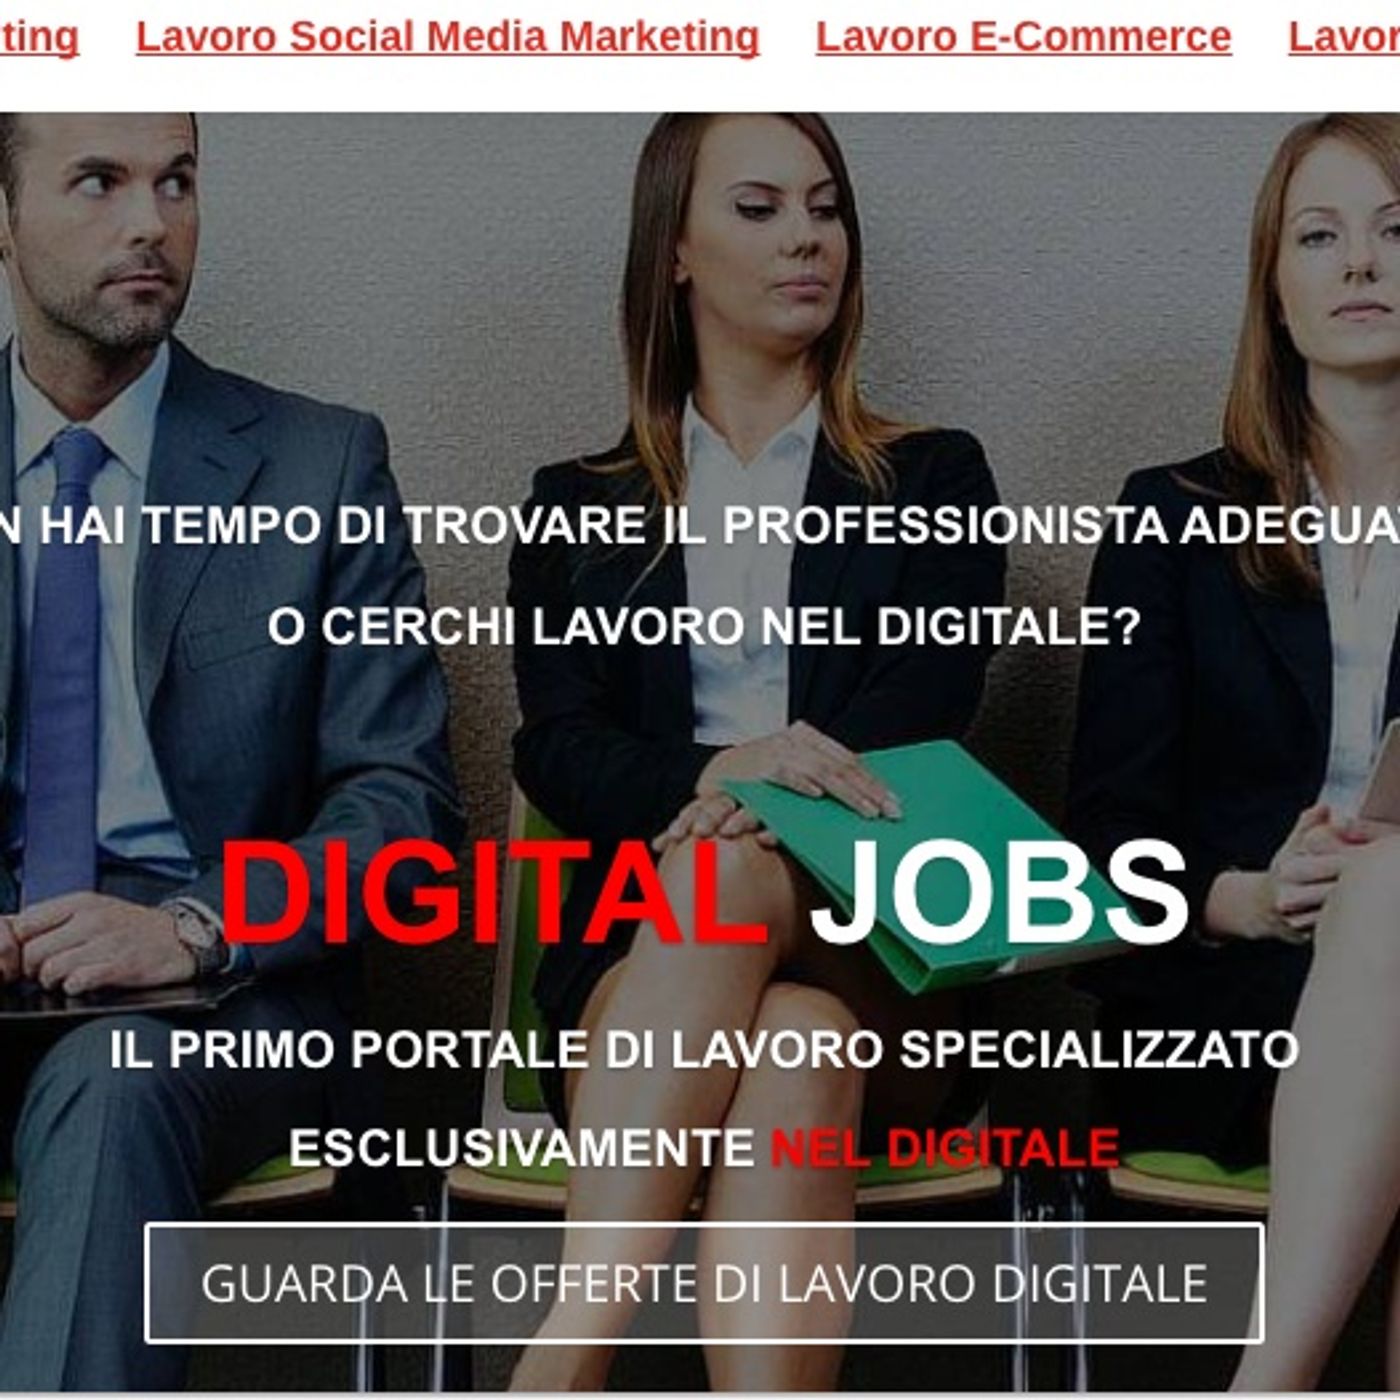 Digital Jobs: professioni Digitali